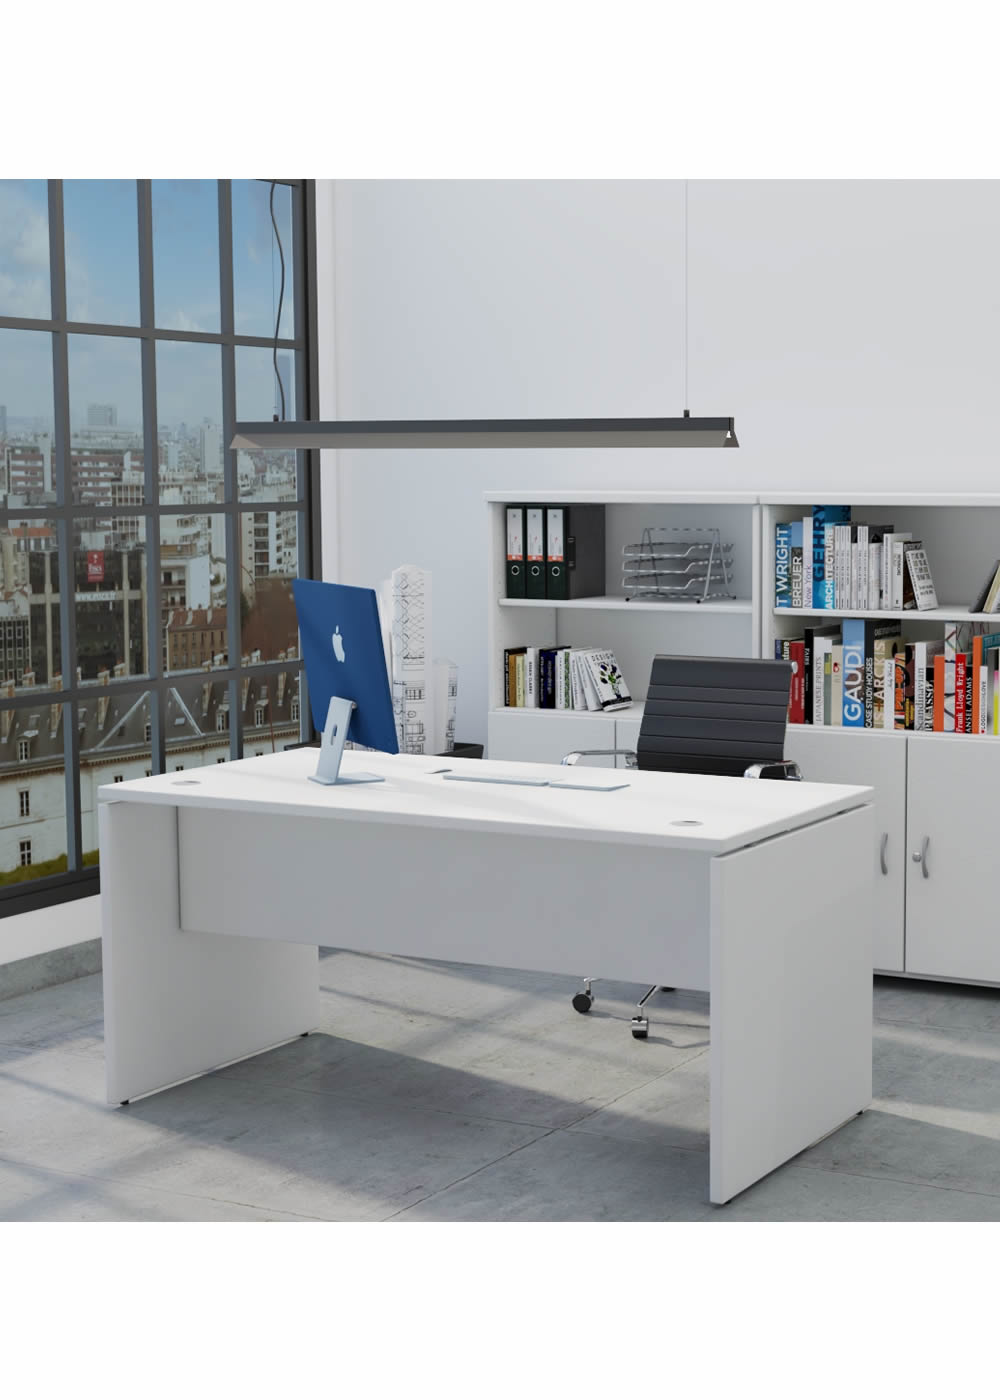 Mesa De Oficina Profesional. Escritorio Compacto - Euro 2000 - De 160x80 Cm  - Color Blanco. con Ofertas en Carrefour